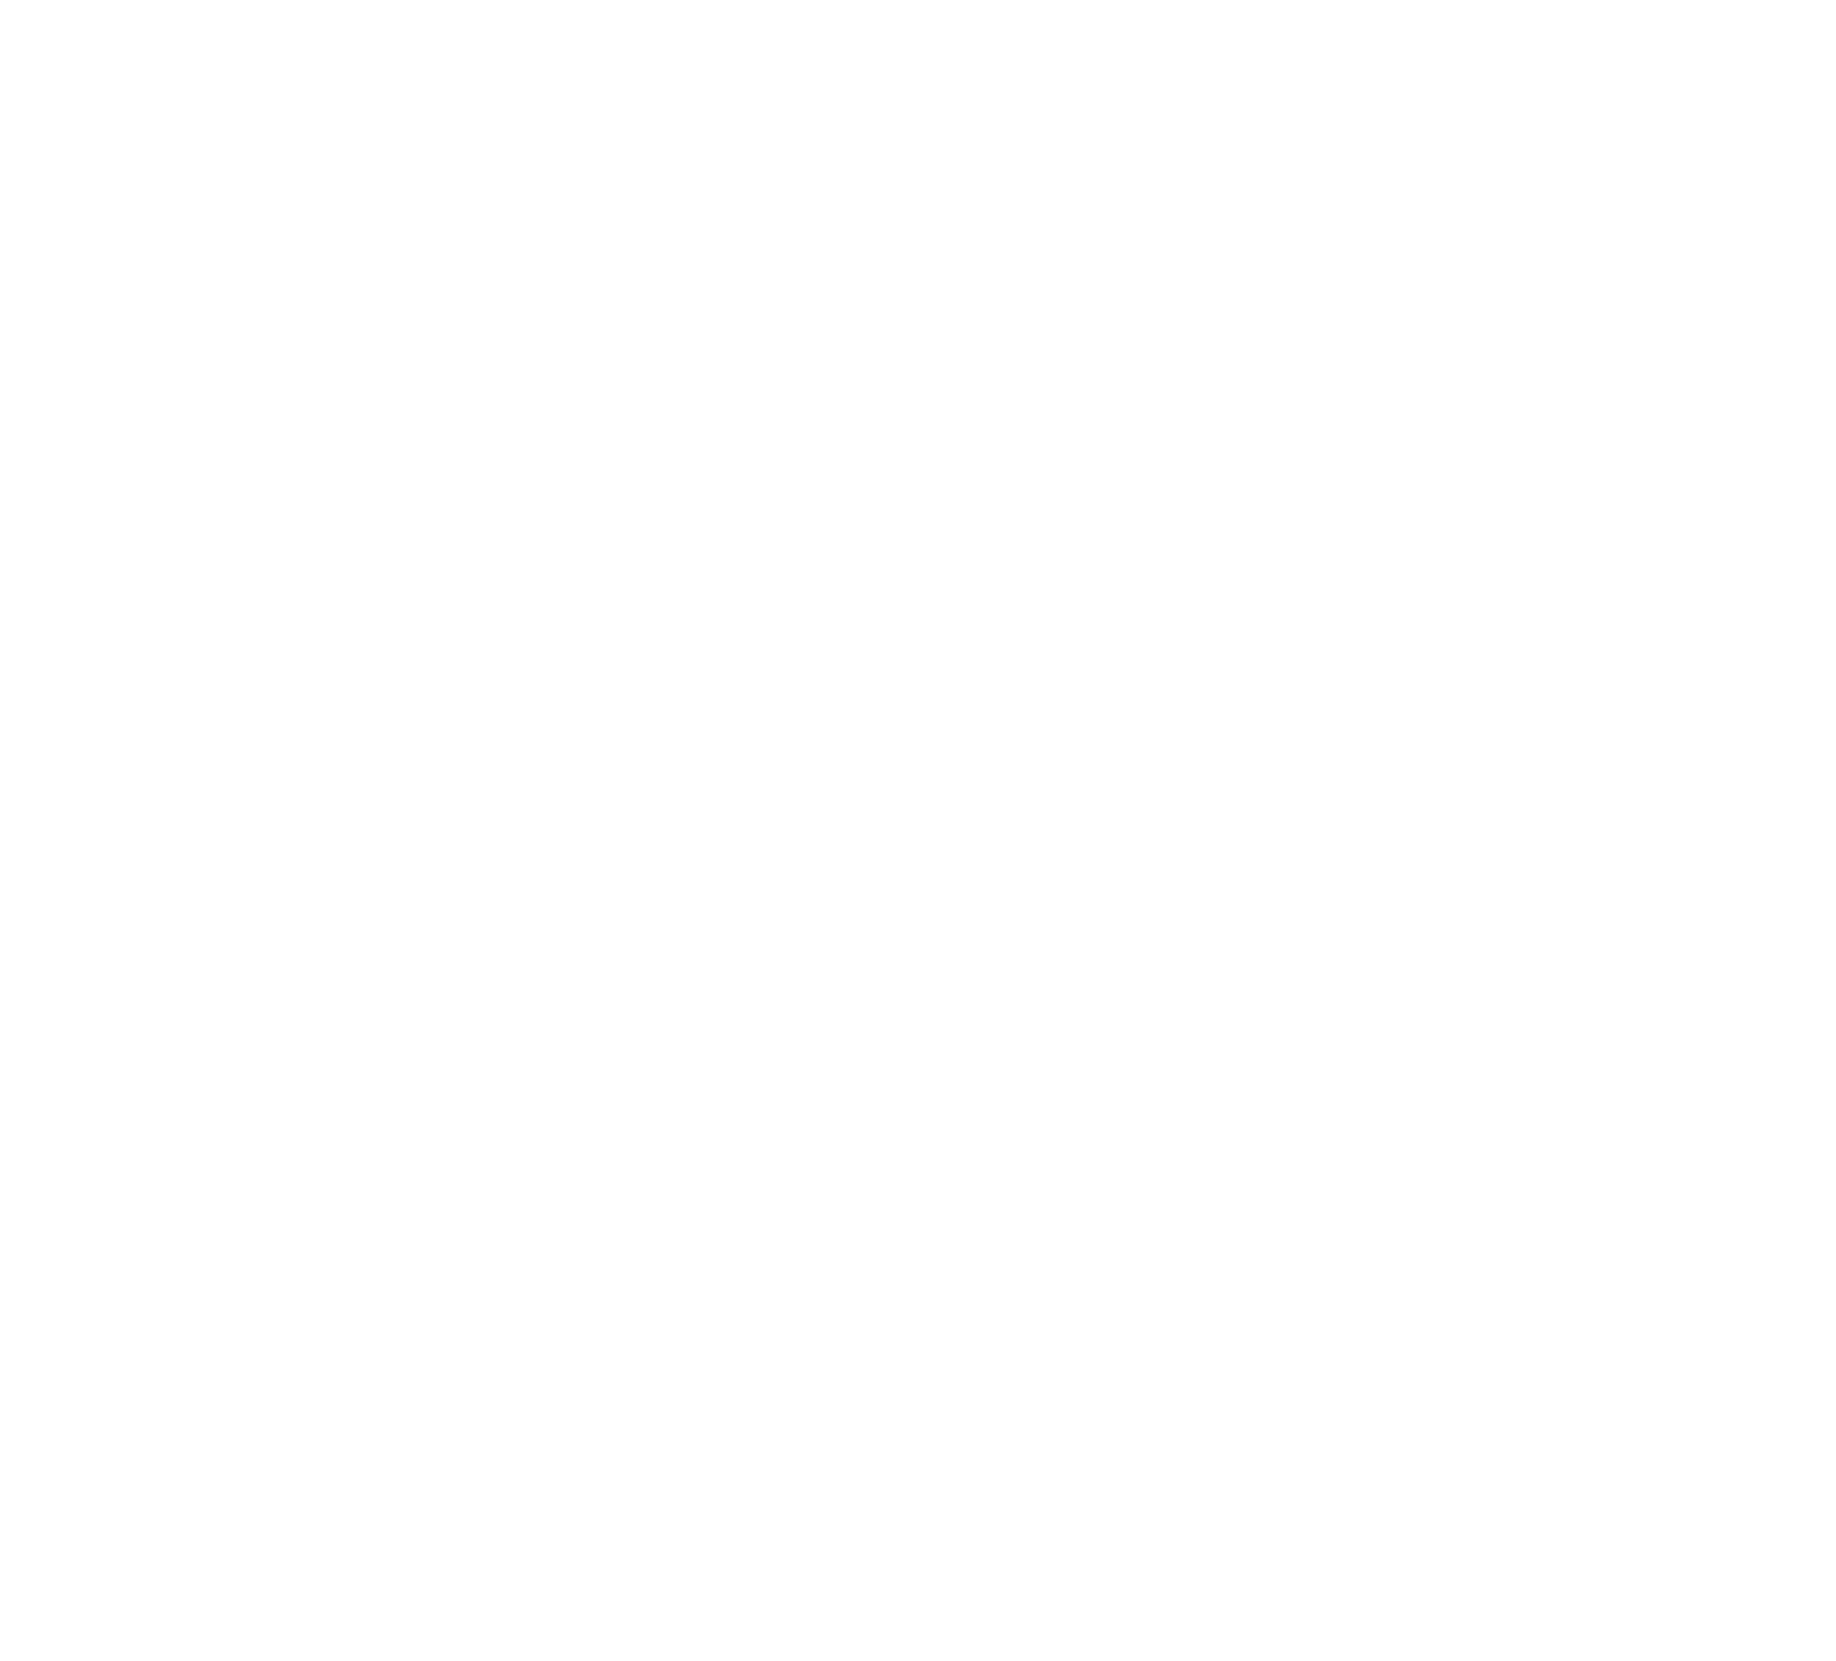 Ångmans Trafikskola i Sveg - Härjedalen